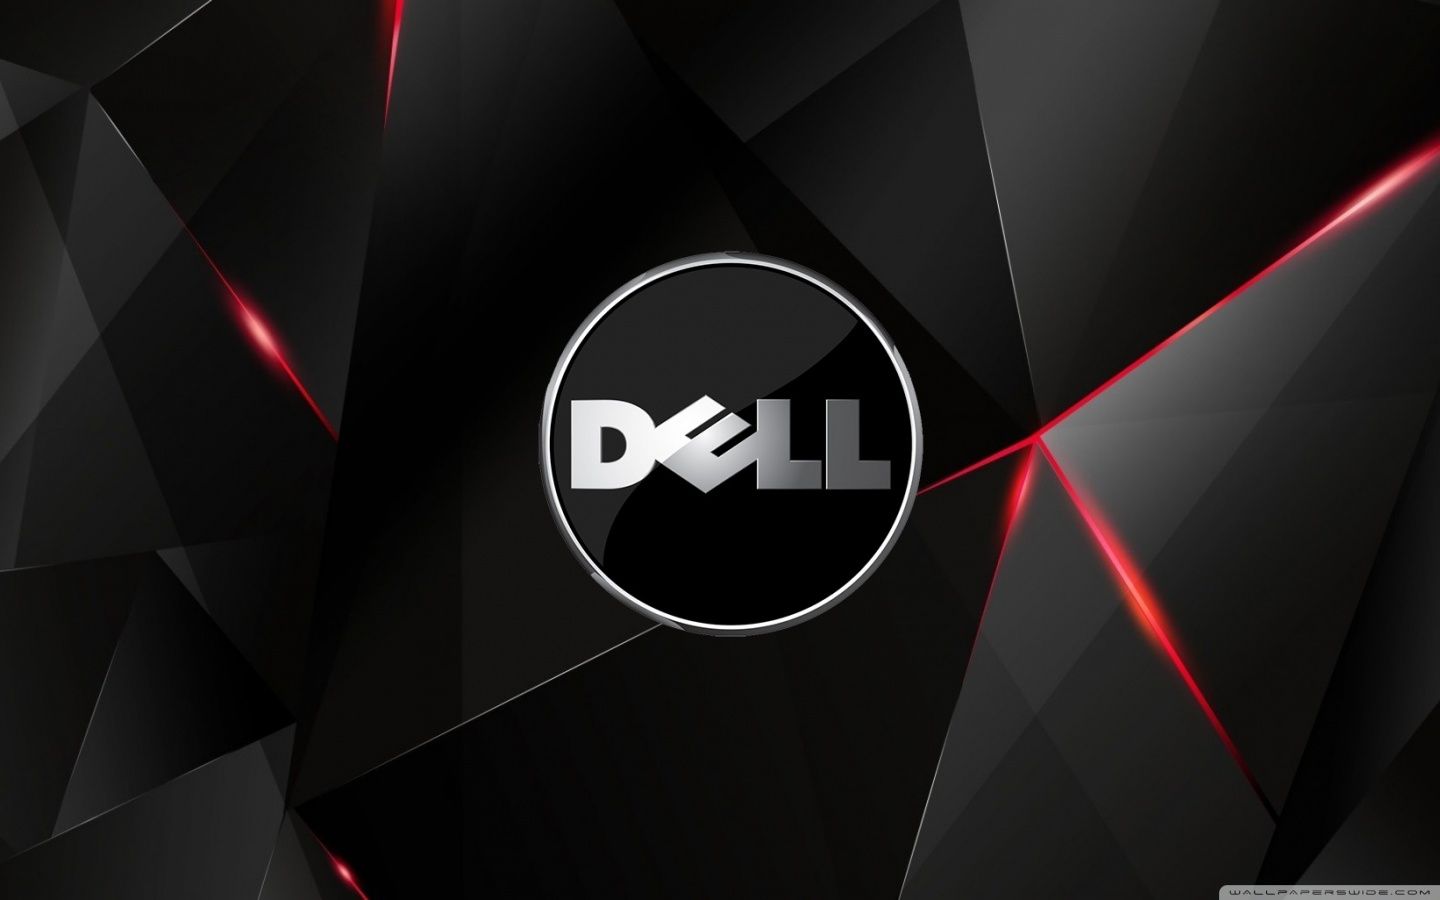 Hình nền Dell gaming sẽ tạo nên một dấu ấn đậm nét cho người dùng yêu thích các tựa game. Với các hình ảnh trong trẻo, sắc nét và đầy tâm trạng, hình nền Dell gaming sẽ giúp bạn cảm nhận chân thực hơn những khoảnh khắc trong game. Đón nhận khóe hình nền này để có trải nghiệm gaming đầy trọn vẹn.